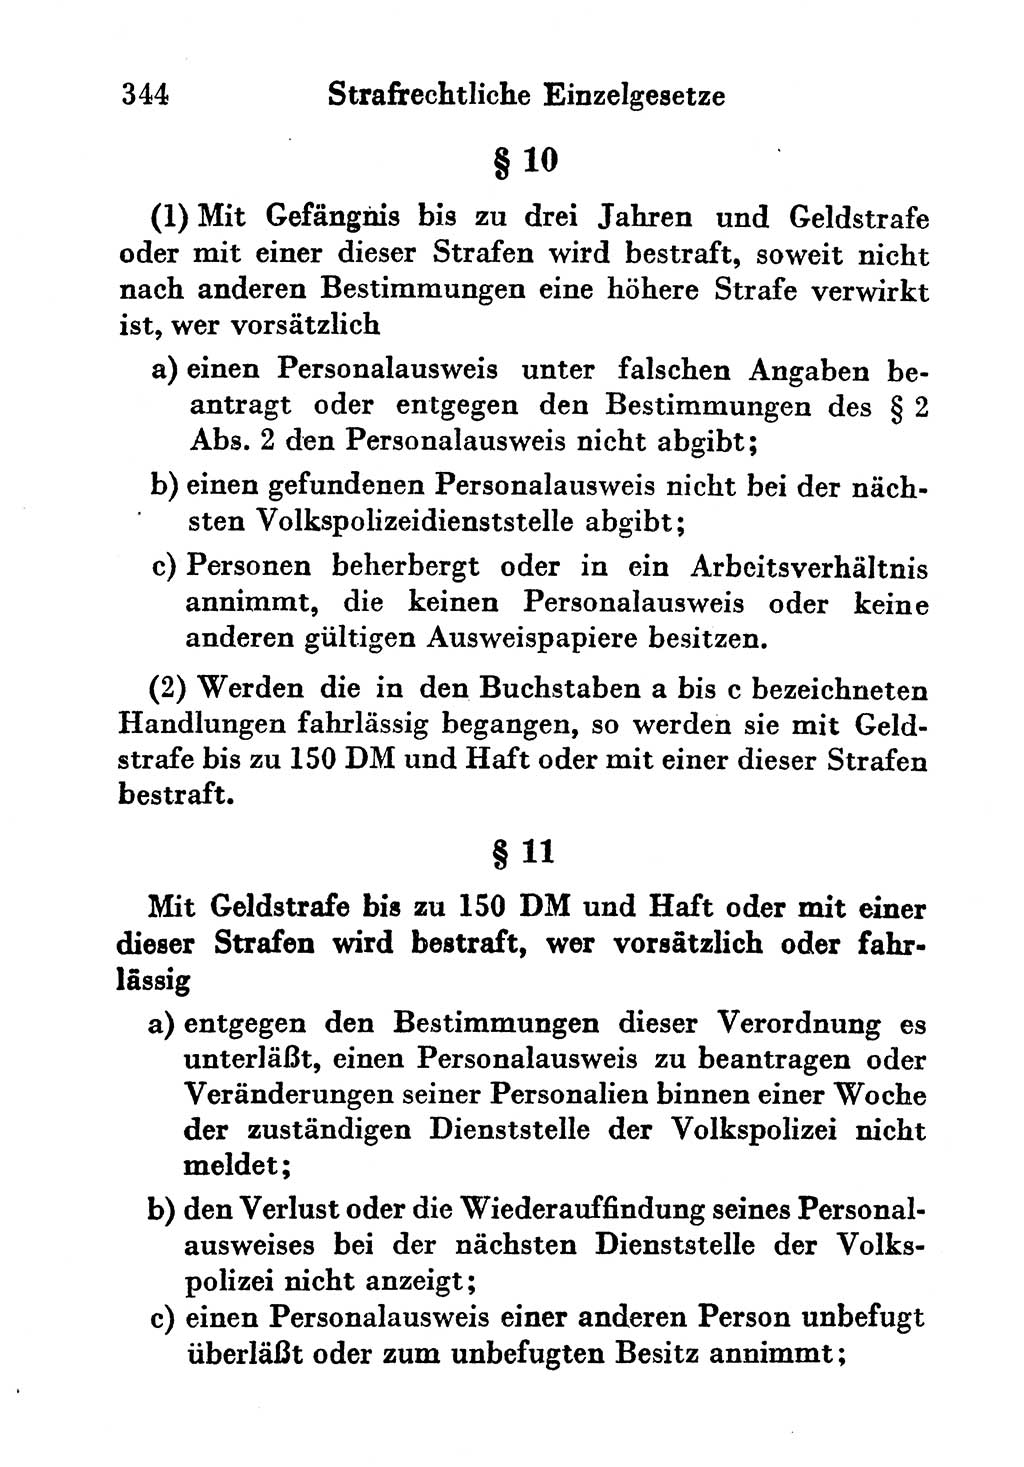 Strafgesetzbuch (StGB) und andere Strafgesetze [Deutsche Demokratische Republik (DDR)] 1956, Seite 344 (StGB Strafges. DDR 1956, S. 344)